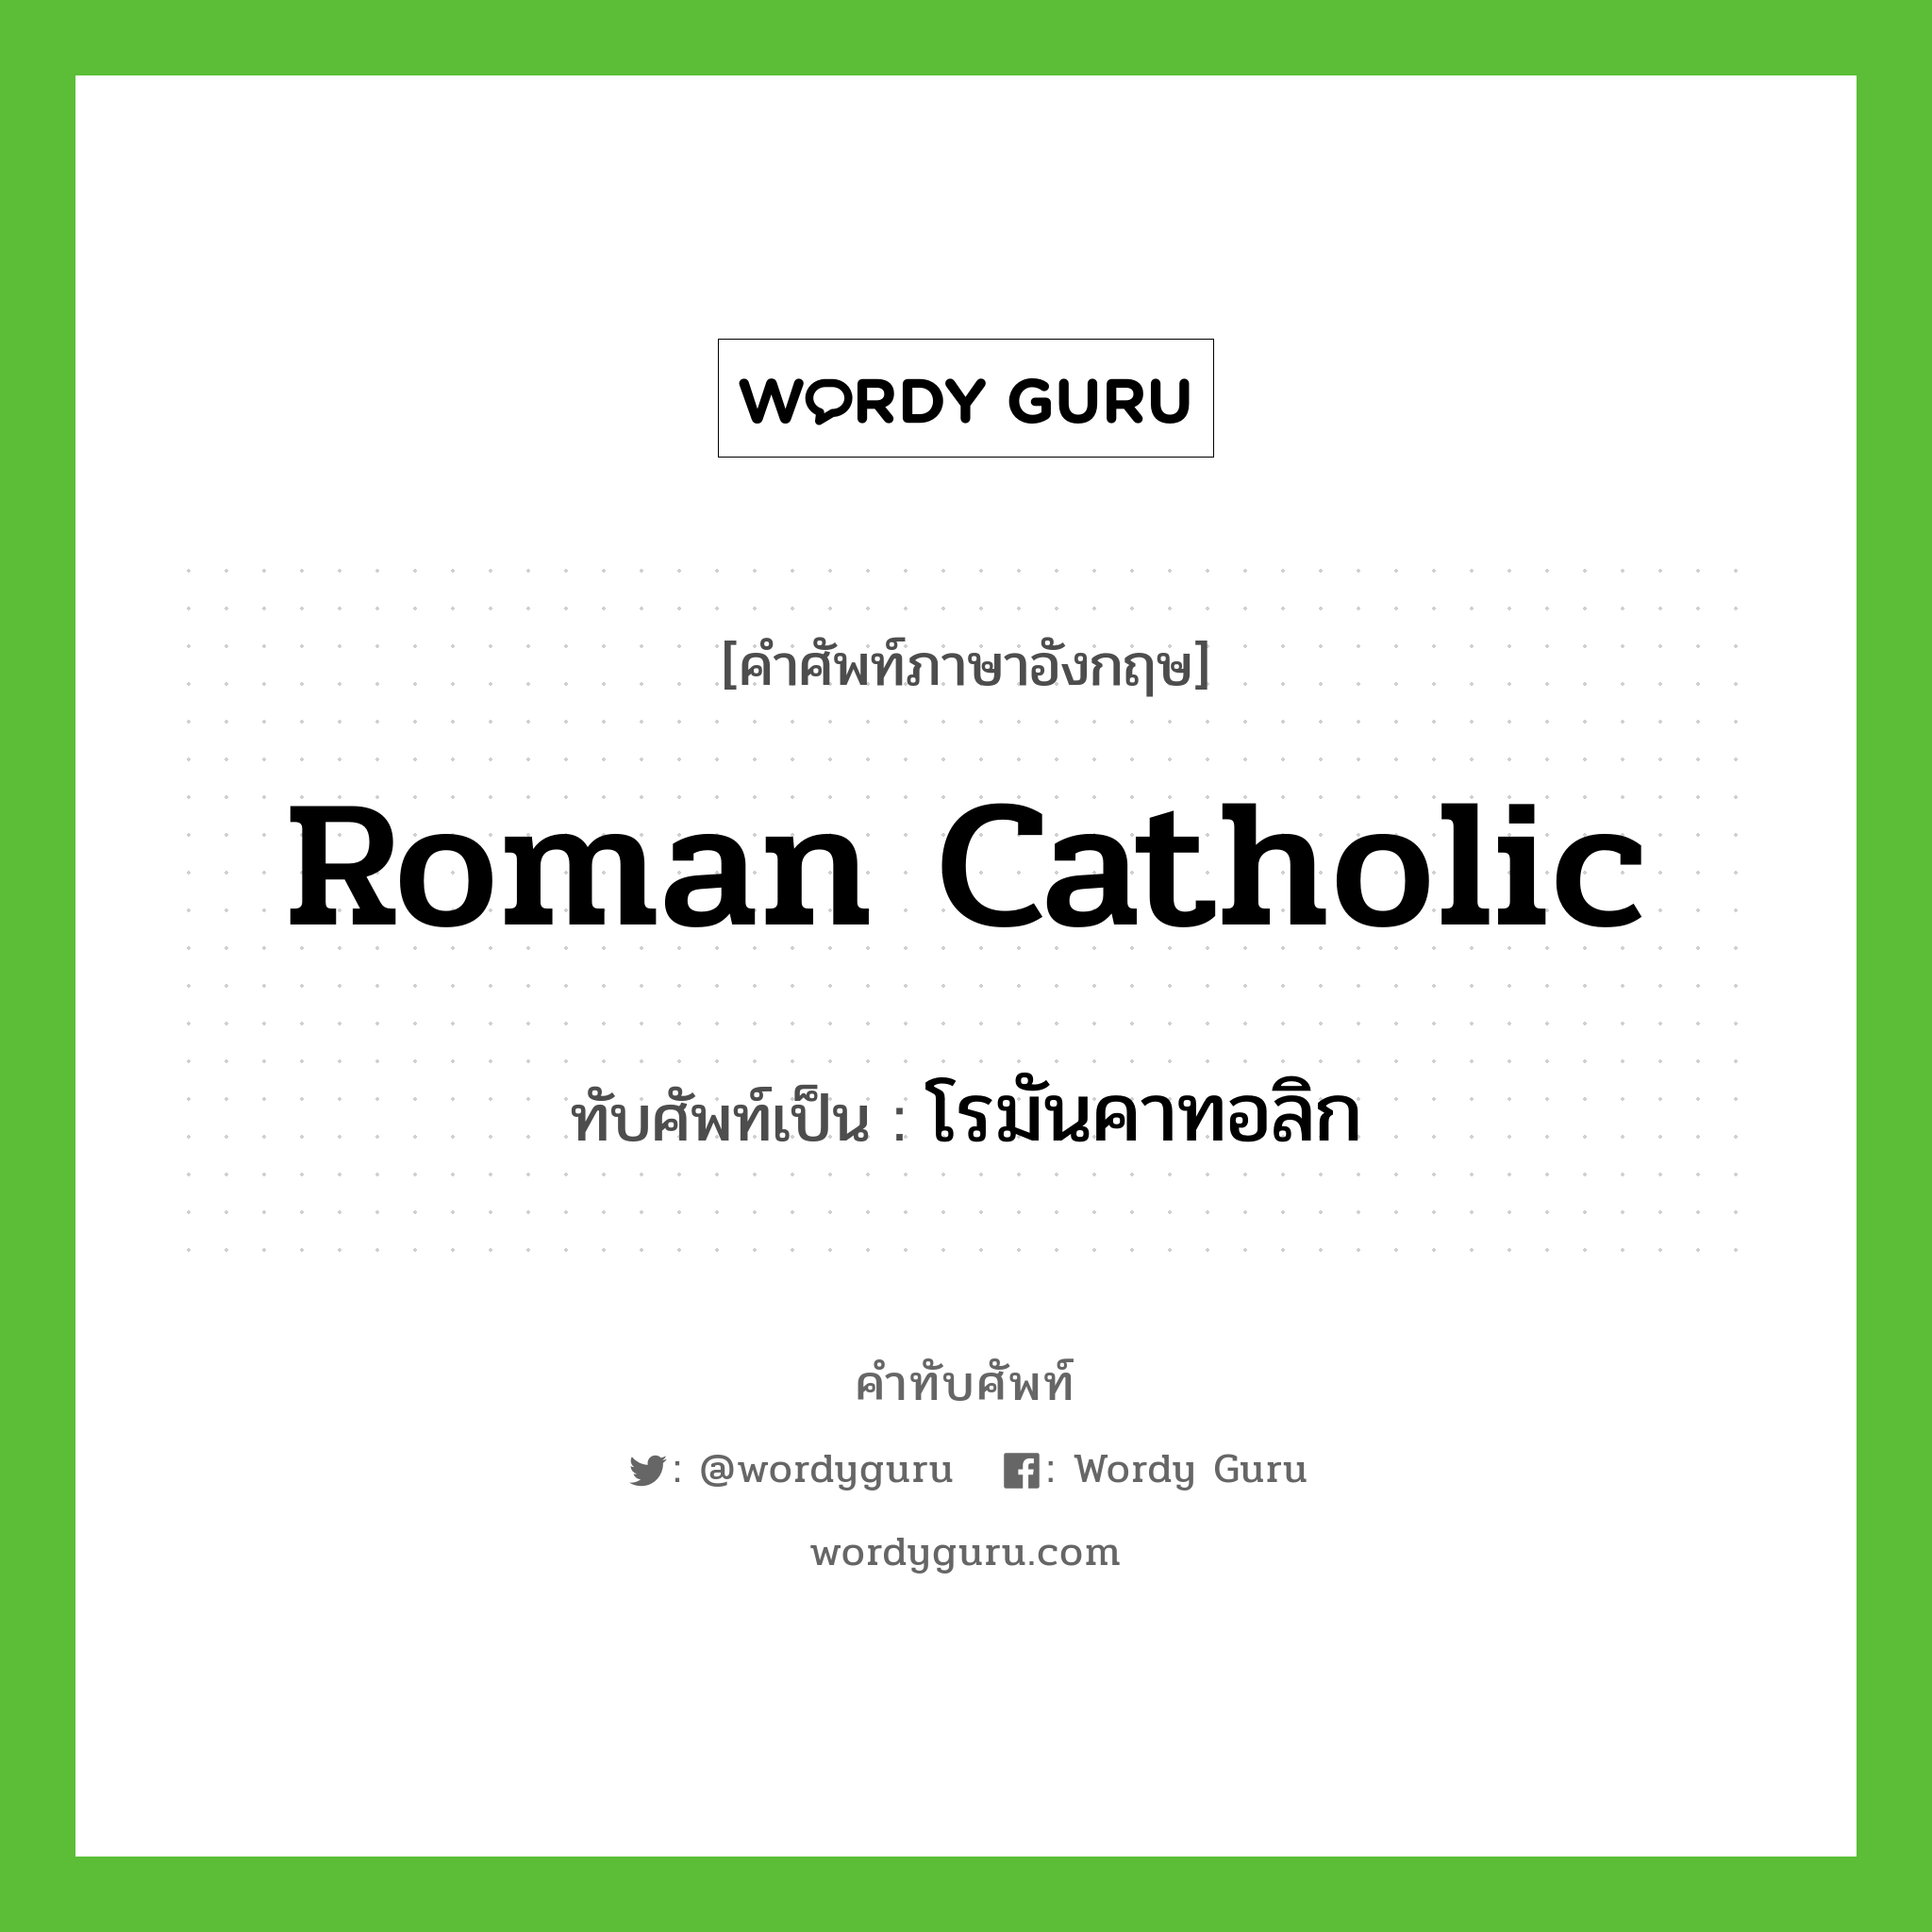 Roman Catholic เขียนเป็นคำไทยว่าอะไร?, คำศัพท์ภาษาอังกฤษ Roman Catholic ทับศัพท์เป็น โรมันคาทอลิก